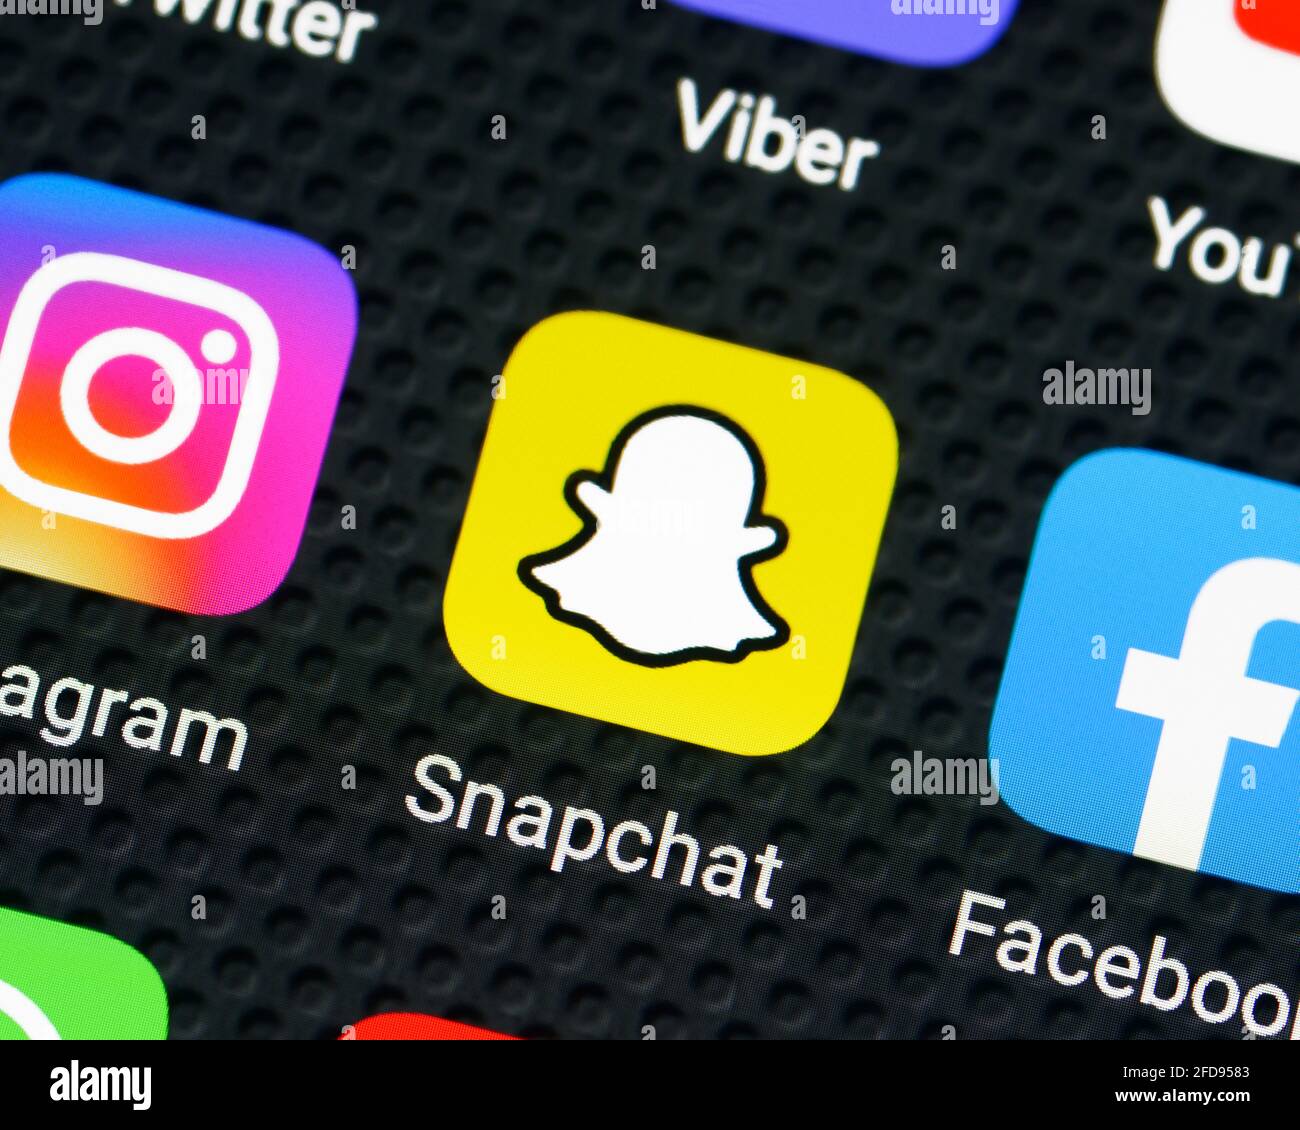 Icona dell'applicazione Snapchat su uno smartphone, primo piano Foto Stock